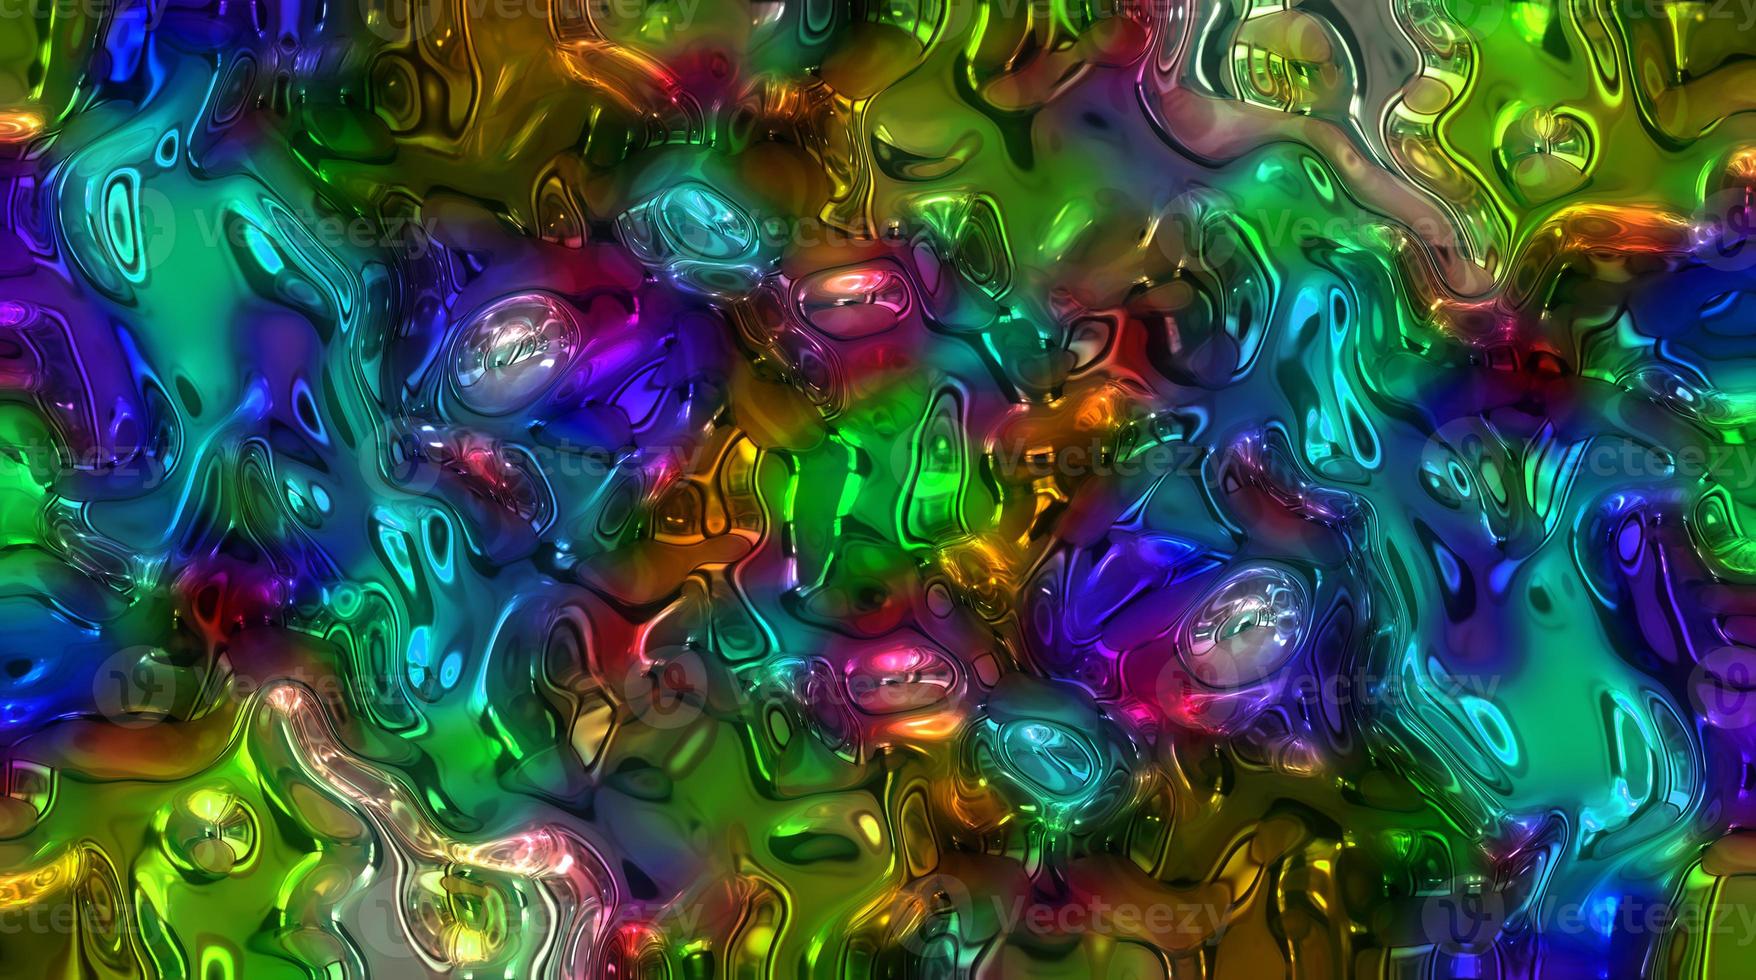 fundo abstrato design de superfície de textura colorida fundo holográfico abstrato, fundo de textura gradiente abstrato, fundo geométrico foto